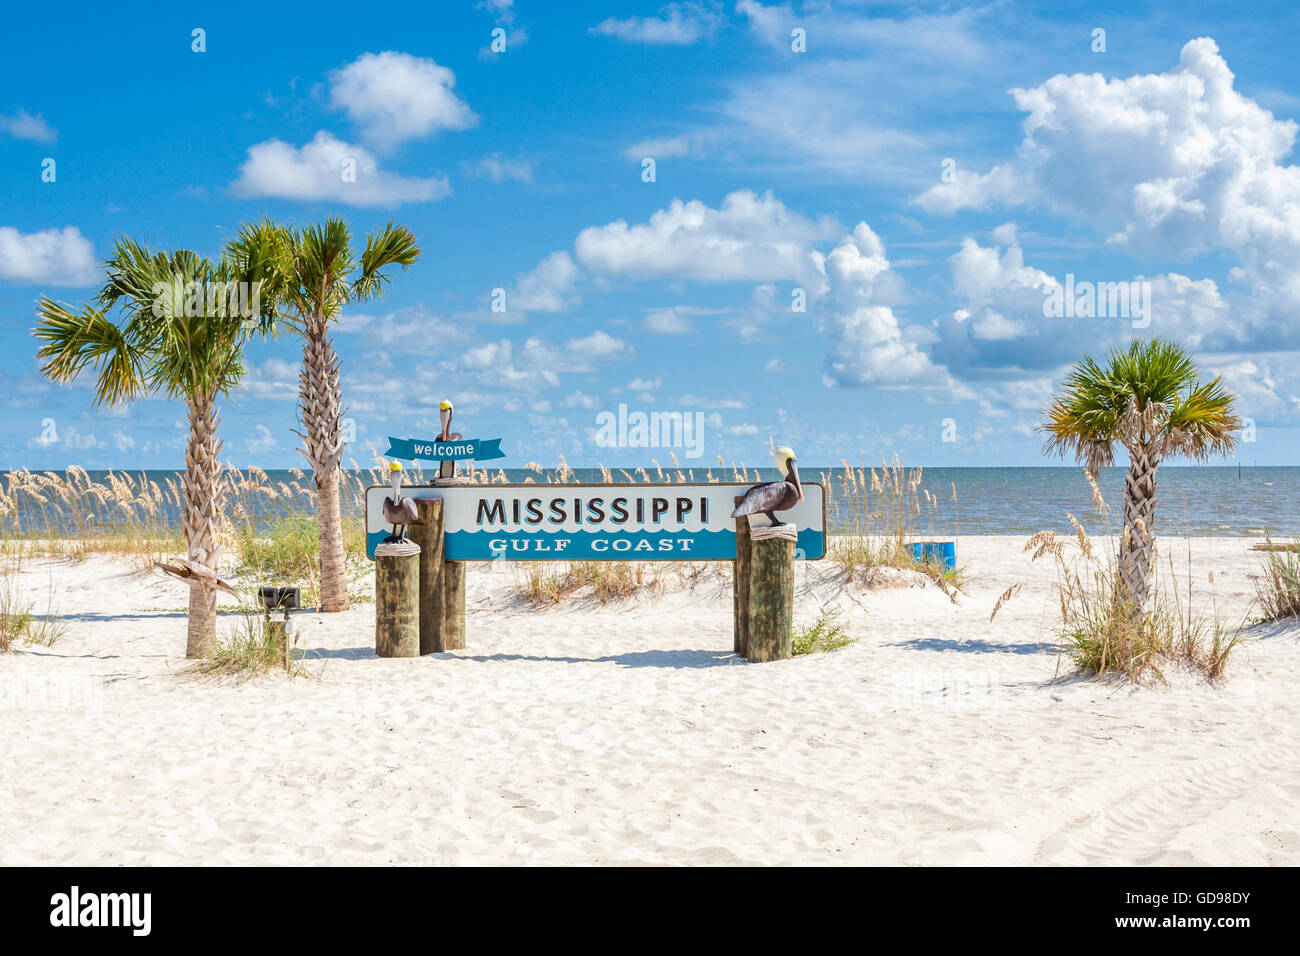 Segno presso la spiaggia accoglie i visitatori per la costa del Golfo del Mississippi a Gulfport, Mississippi Foto Stock